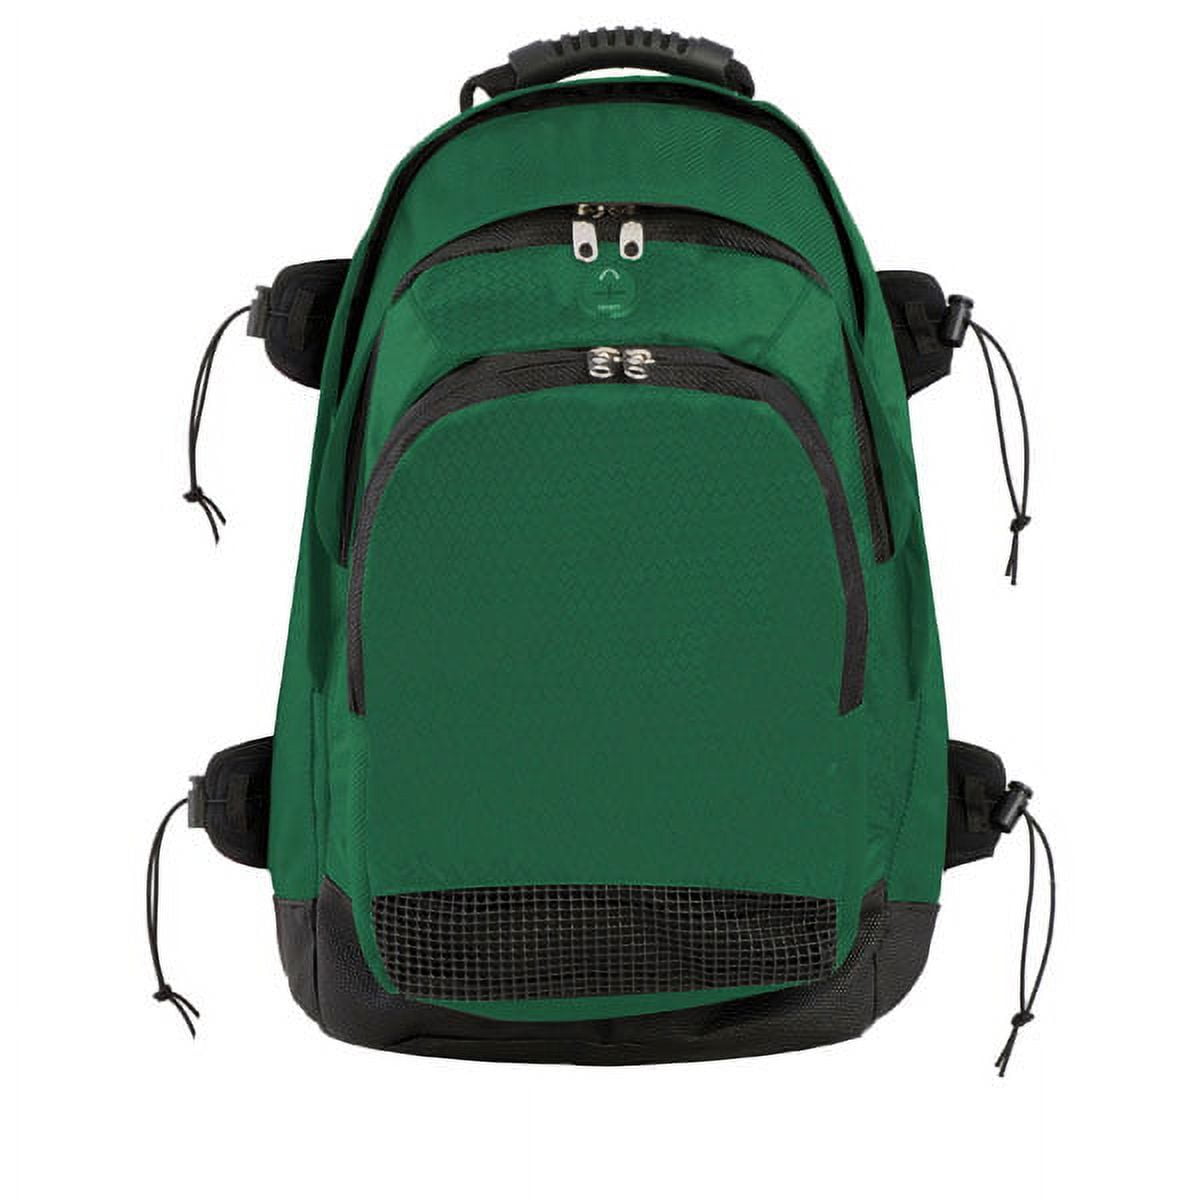 Bp802dgn 13 X 20 X 10 In. Deluxe All Purpose Backpack, Dark Green